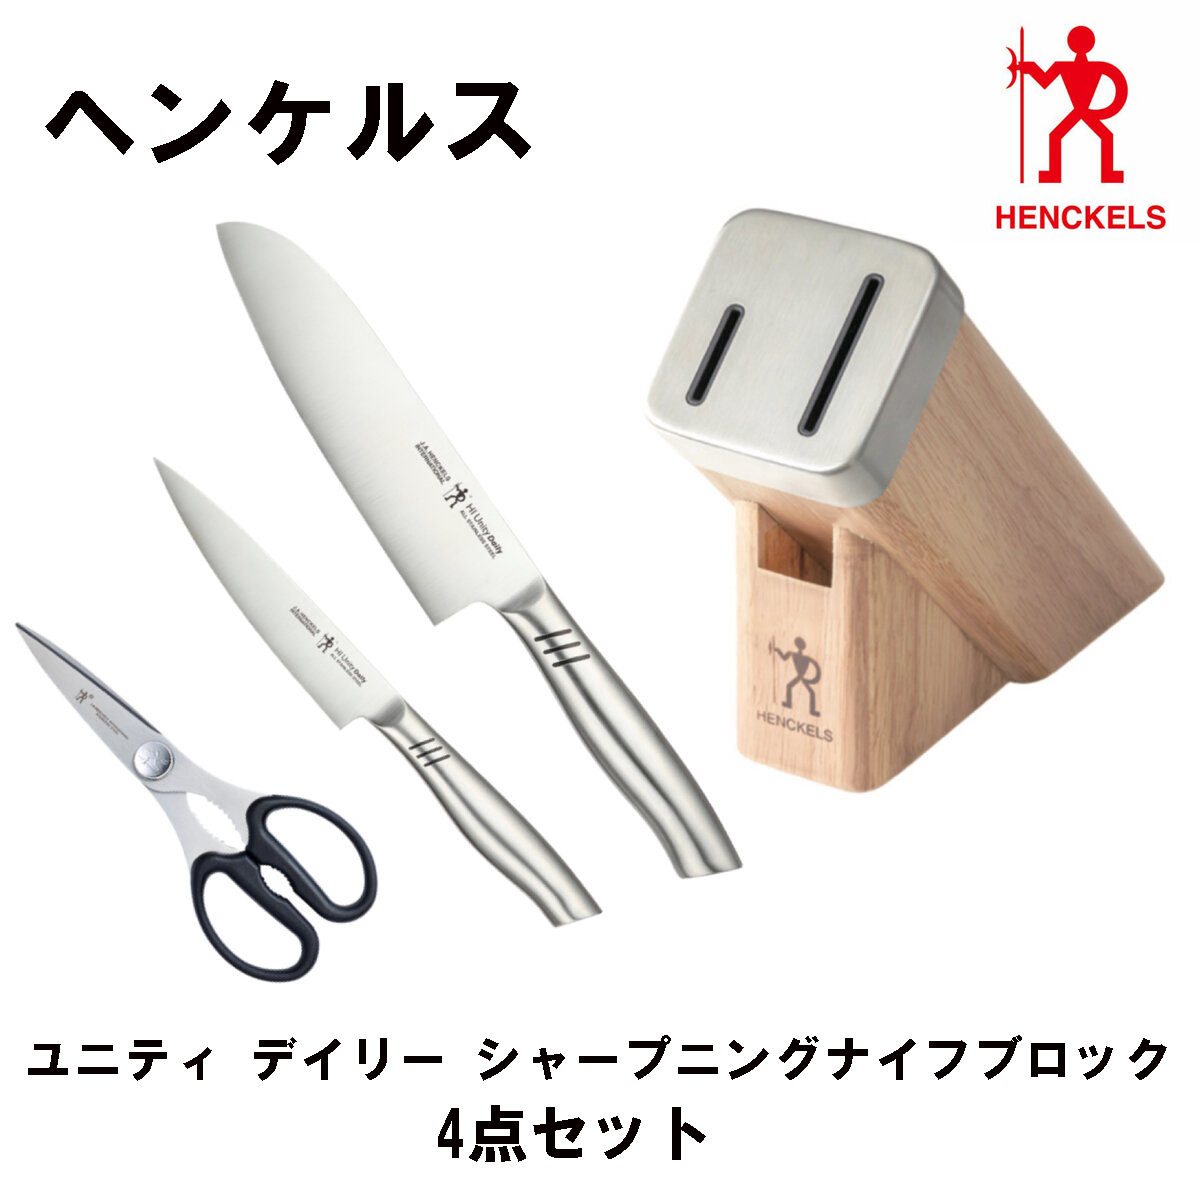 【海外 正規品】 【送料無料】ツヴィリング ナイフ 白5セット ブロック 調理器具